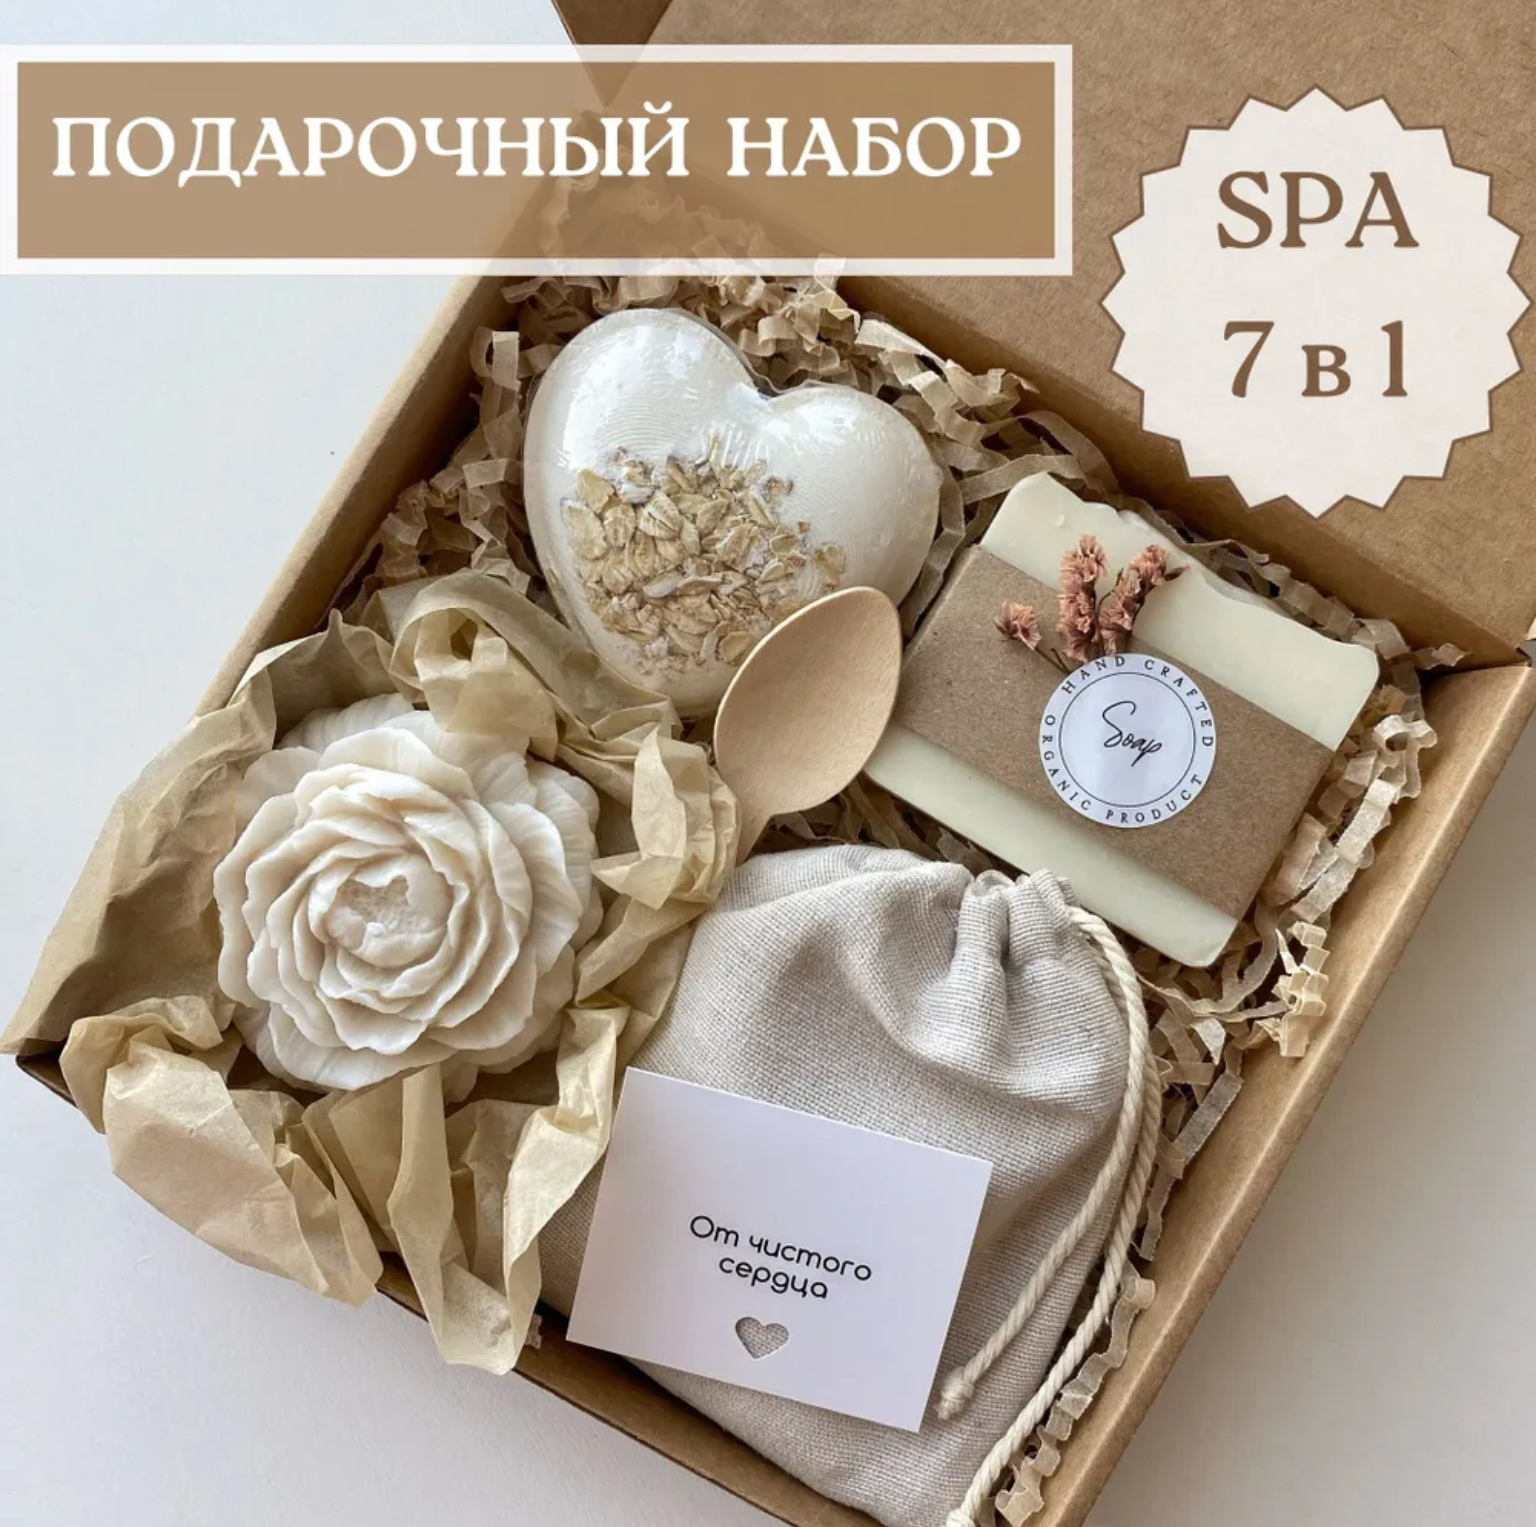 Женский день в Беларуси: топ-10 необычных подарков на 8 марта для любимых